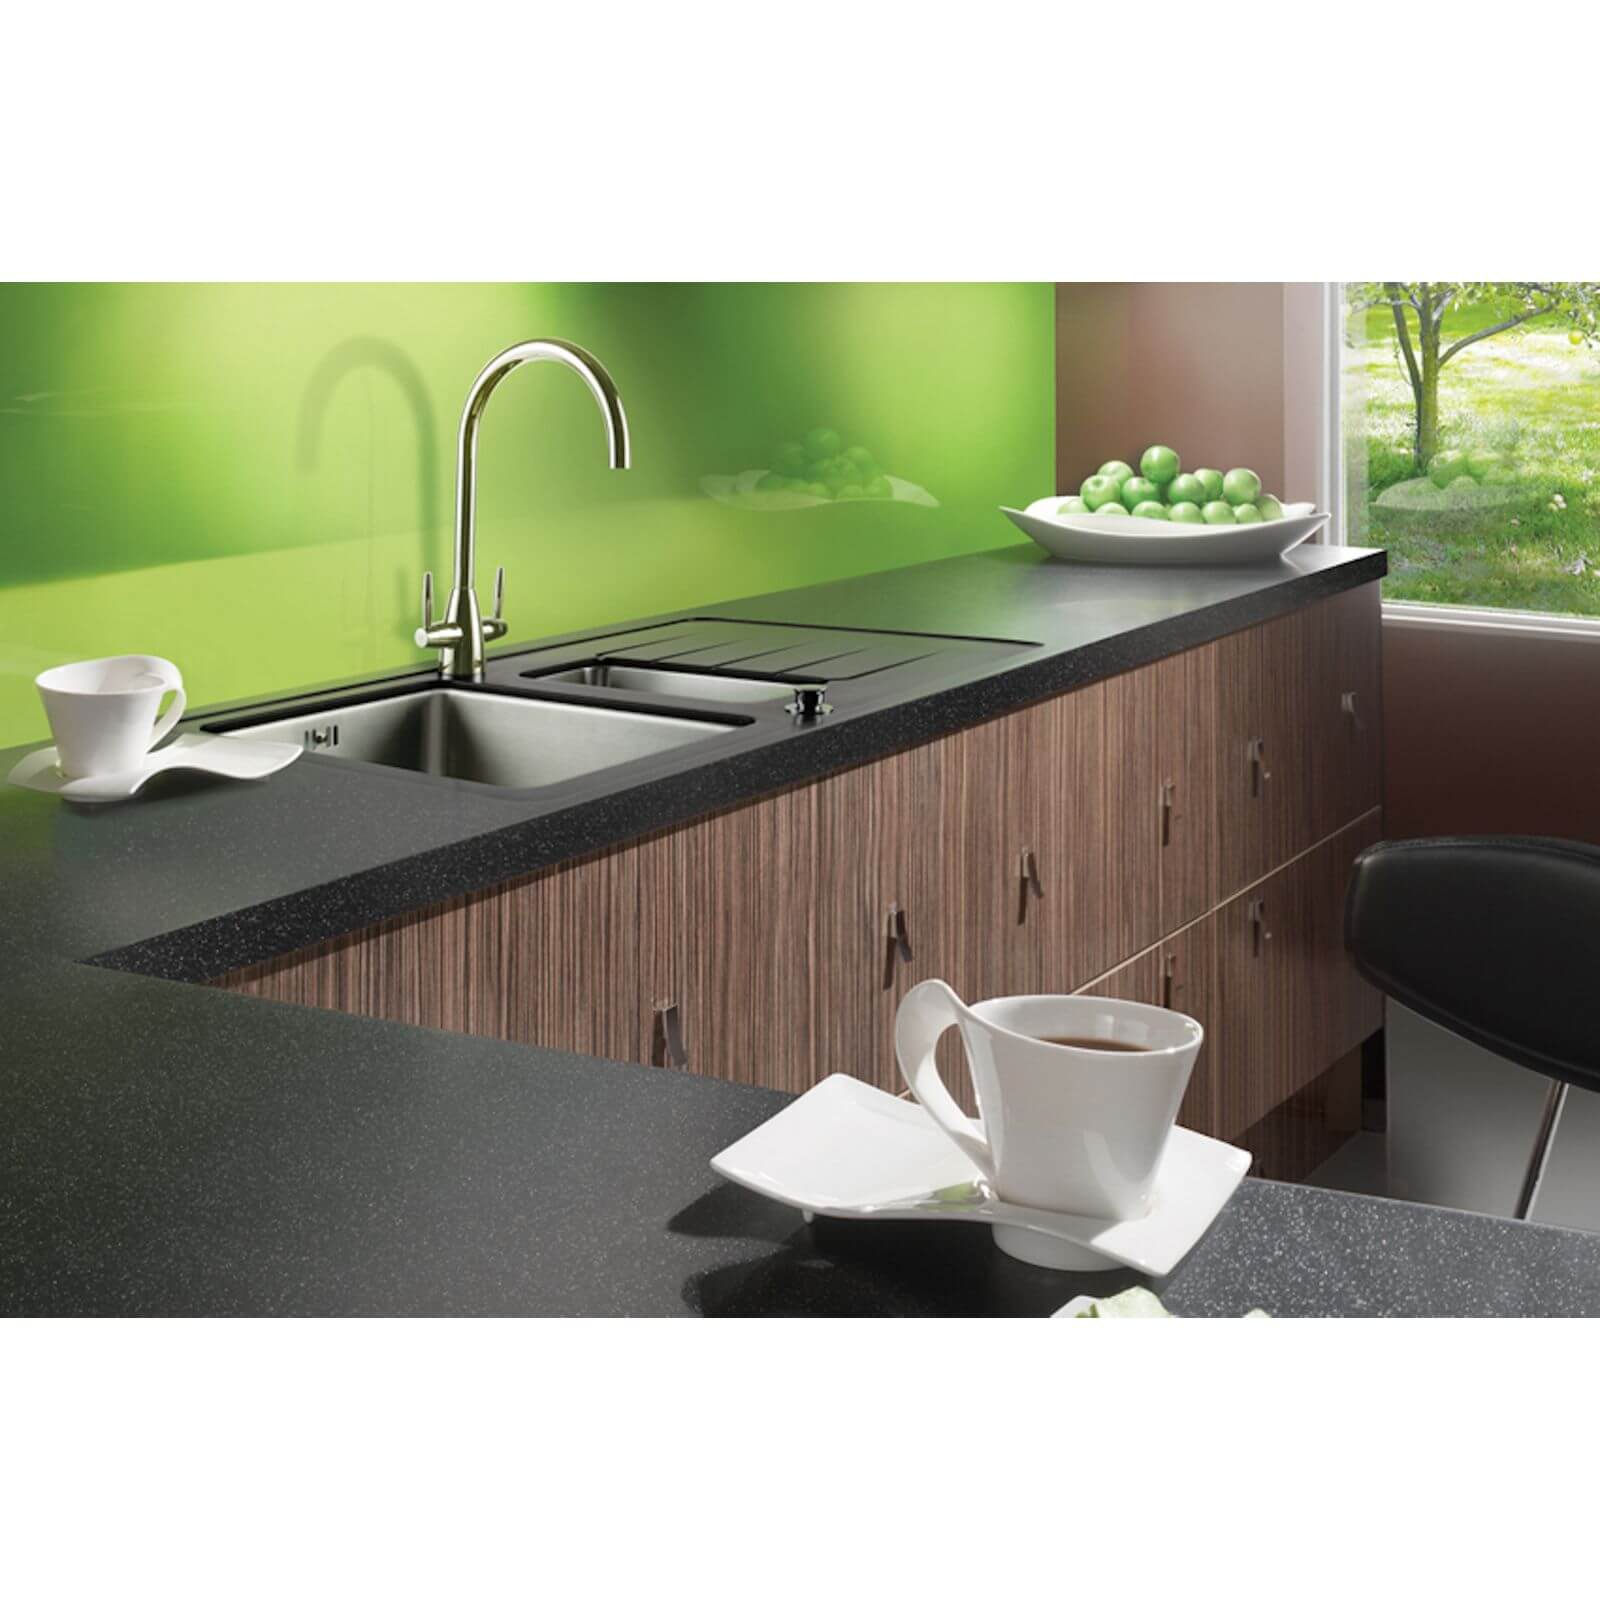 Maia Galaxy Kitchen Worktop C End R95 - 360 x 65 x 4.2cm